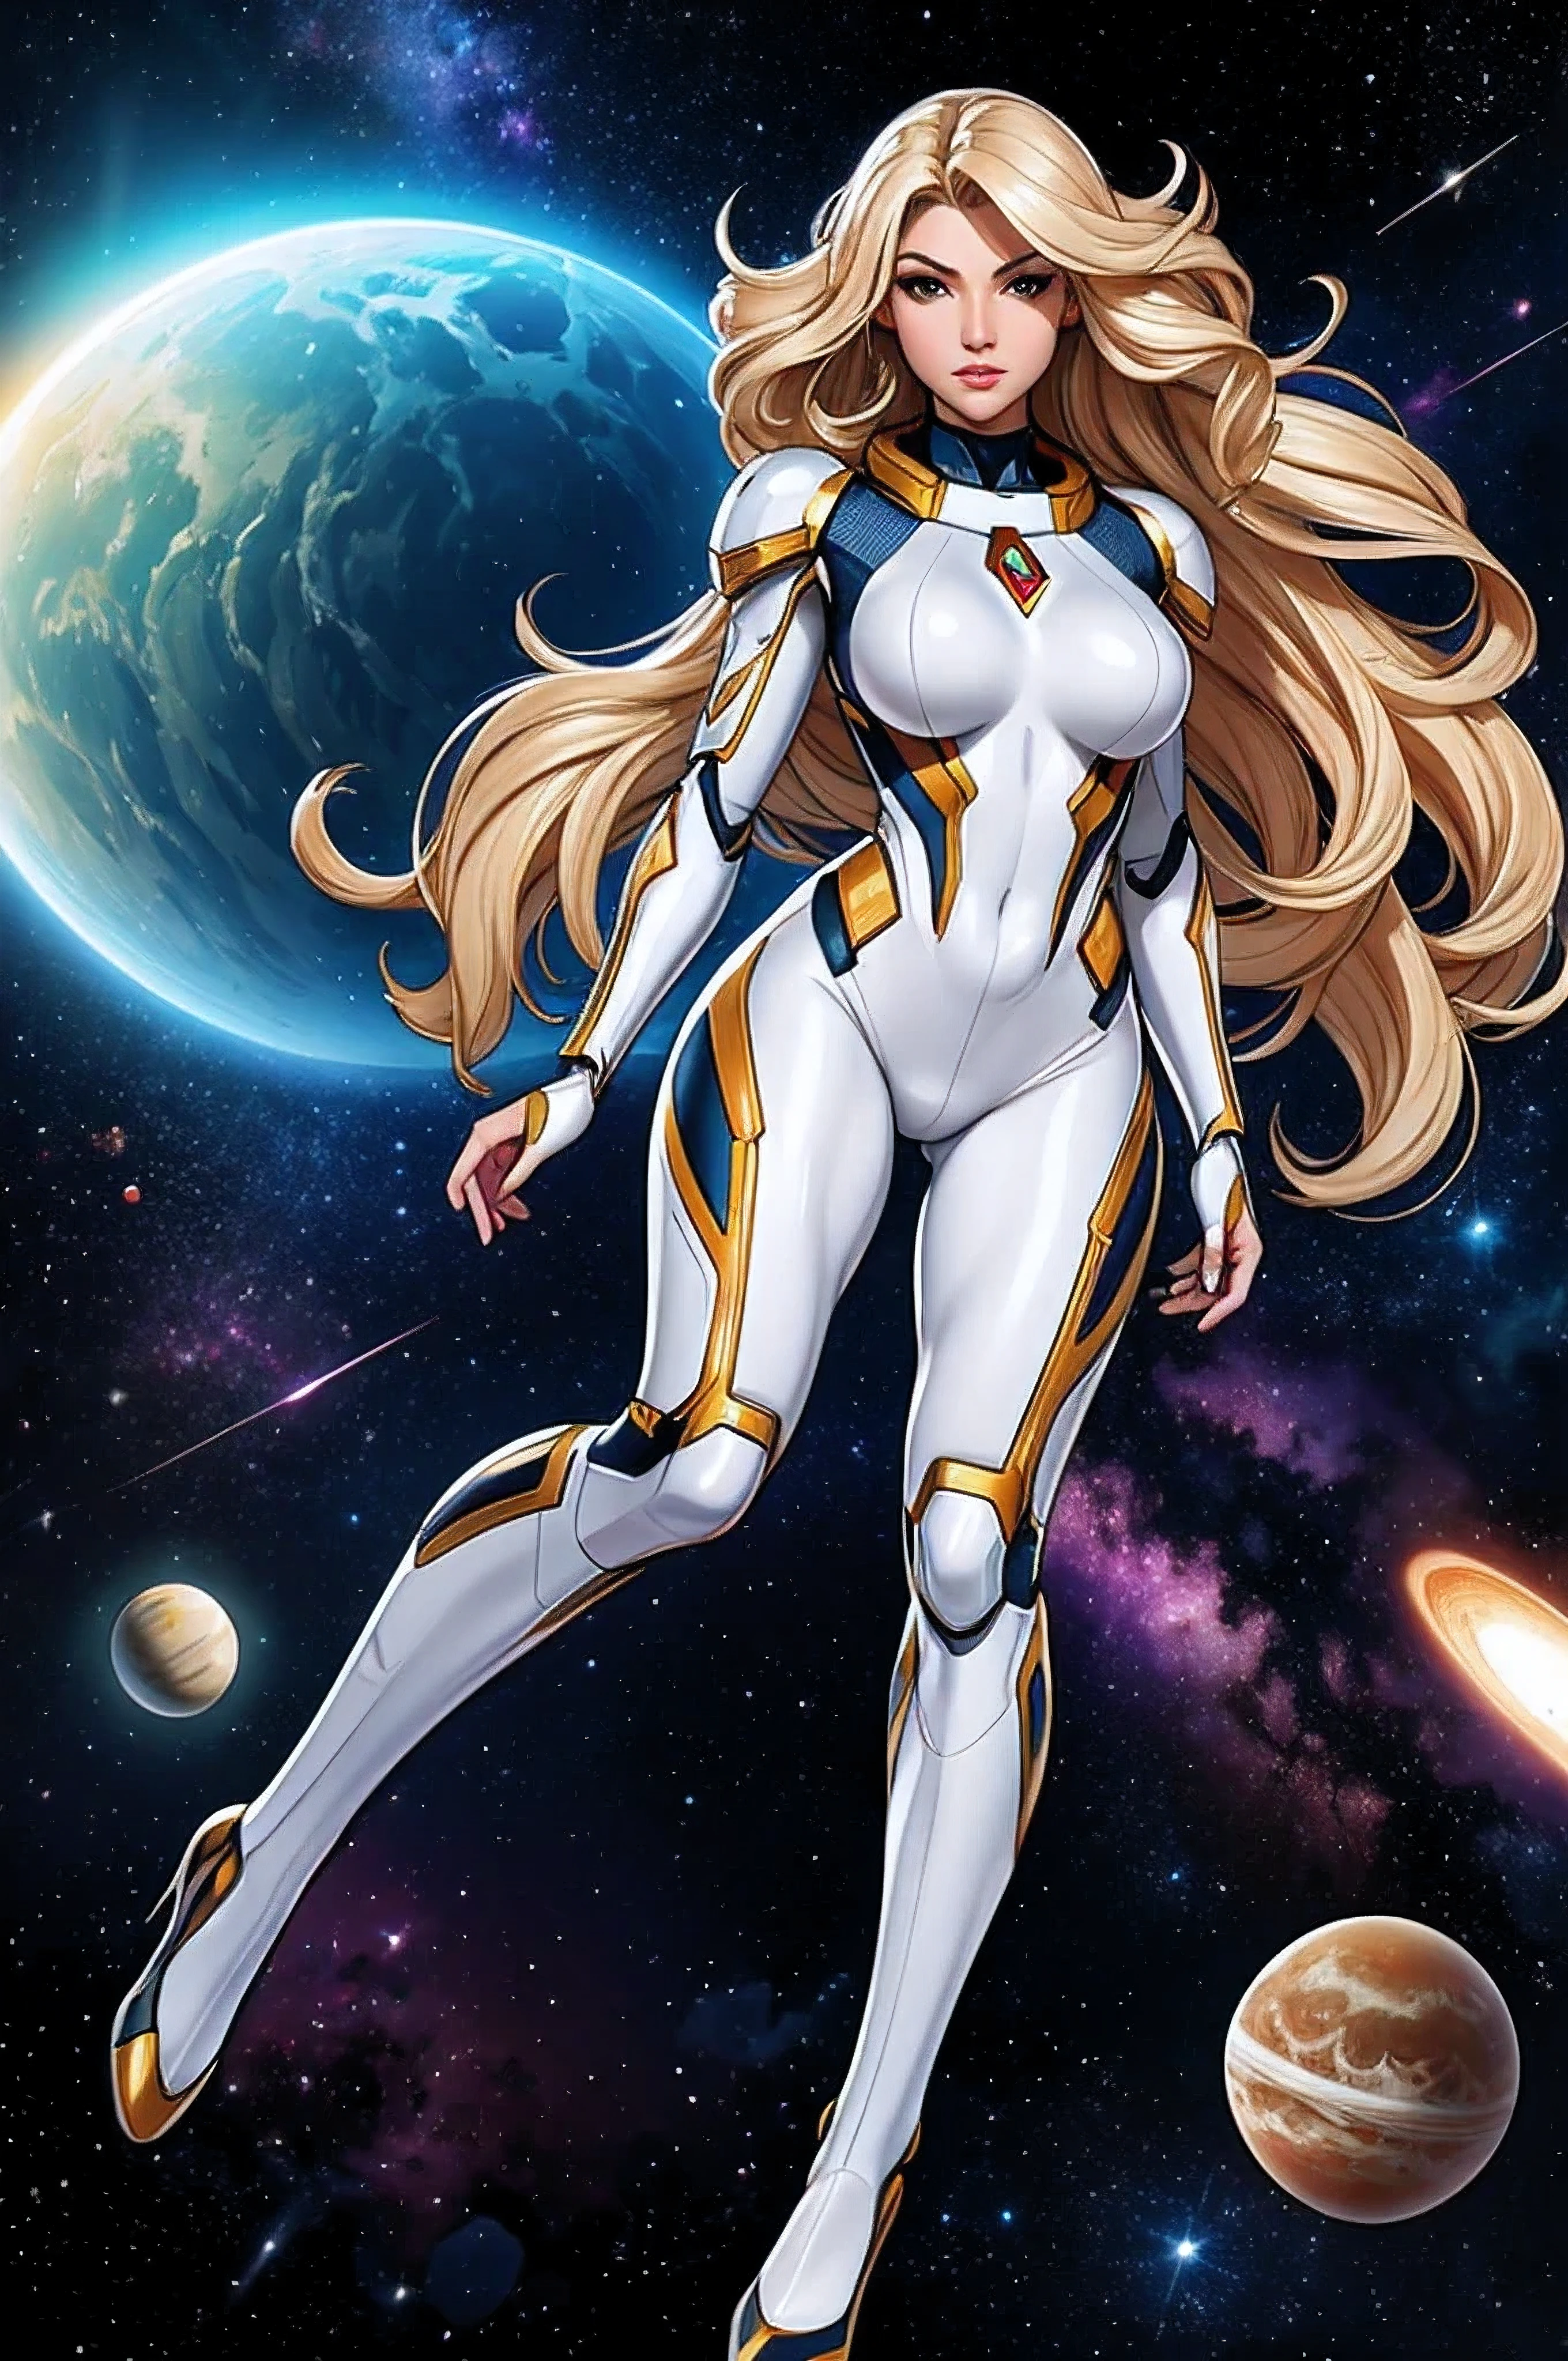 最好的品質, 傑作, 女人太空超級英雄, 漂亮的臉蛋,全身,銀色乳膠套裝上的高科技裝甲, 金色長捲髮,在深空飛行的超級英雄姿勢, 背景中有幾個行星和太陽
